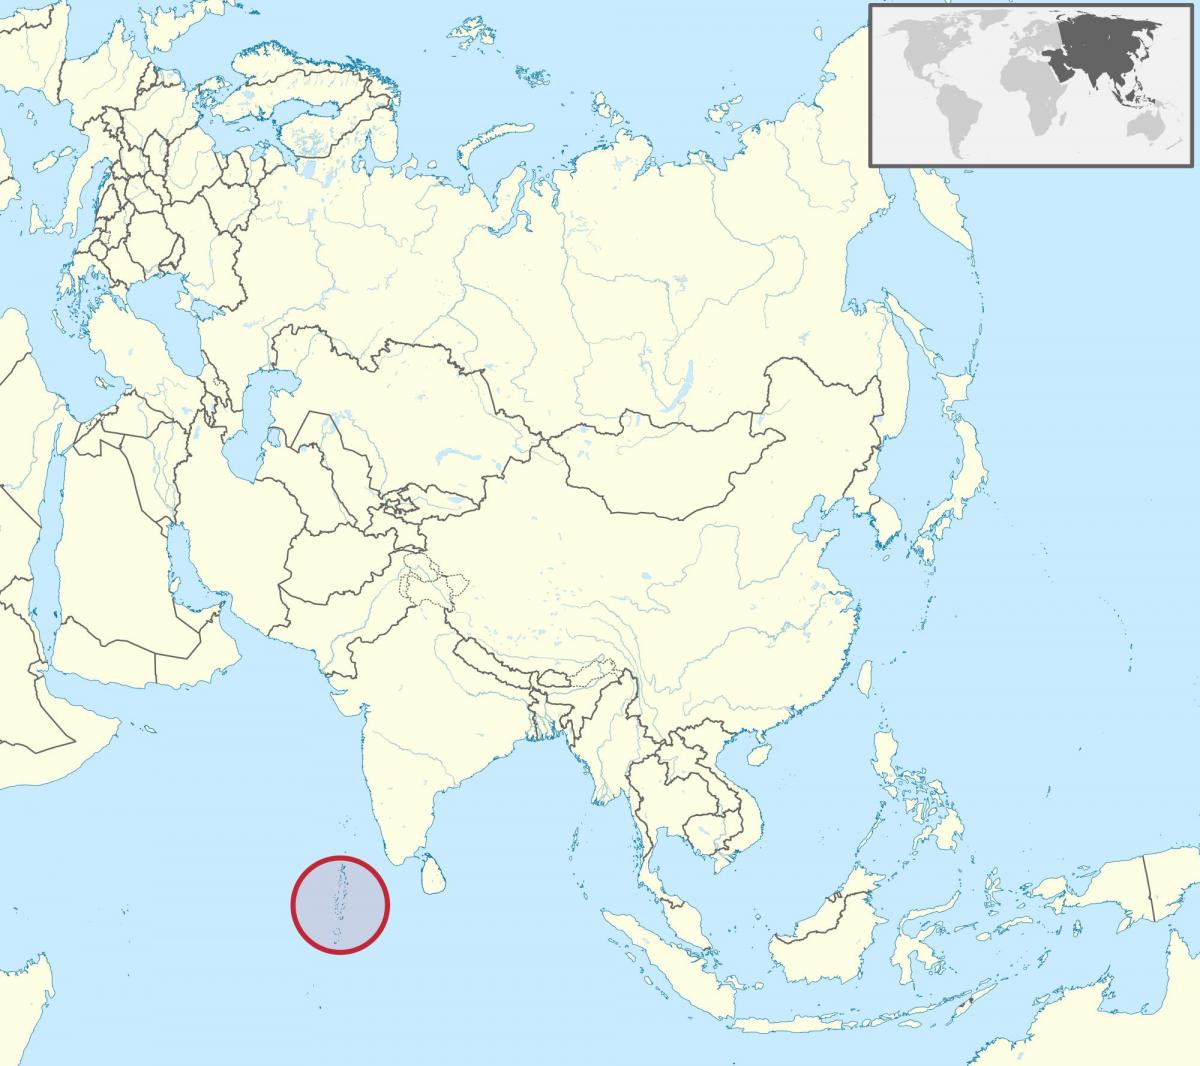 خريطة جزر المالديف خريطة آسيا